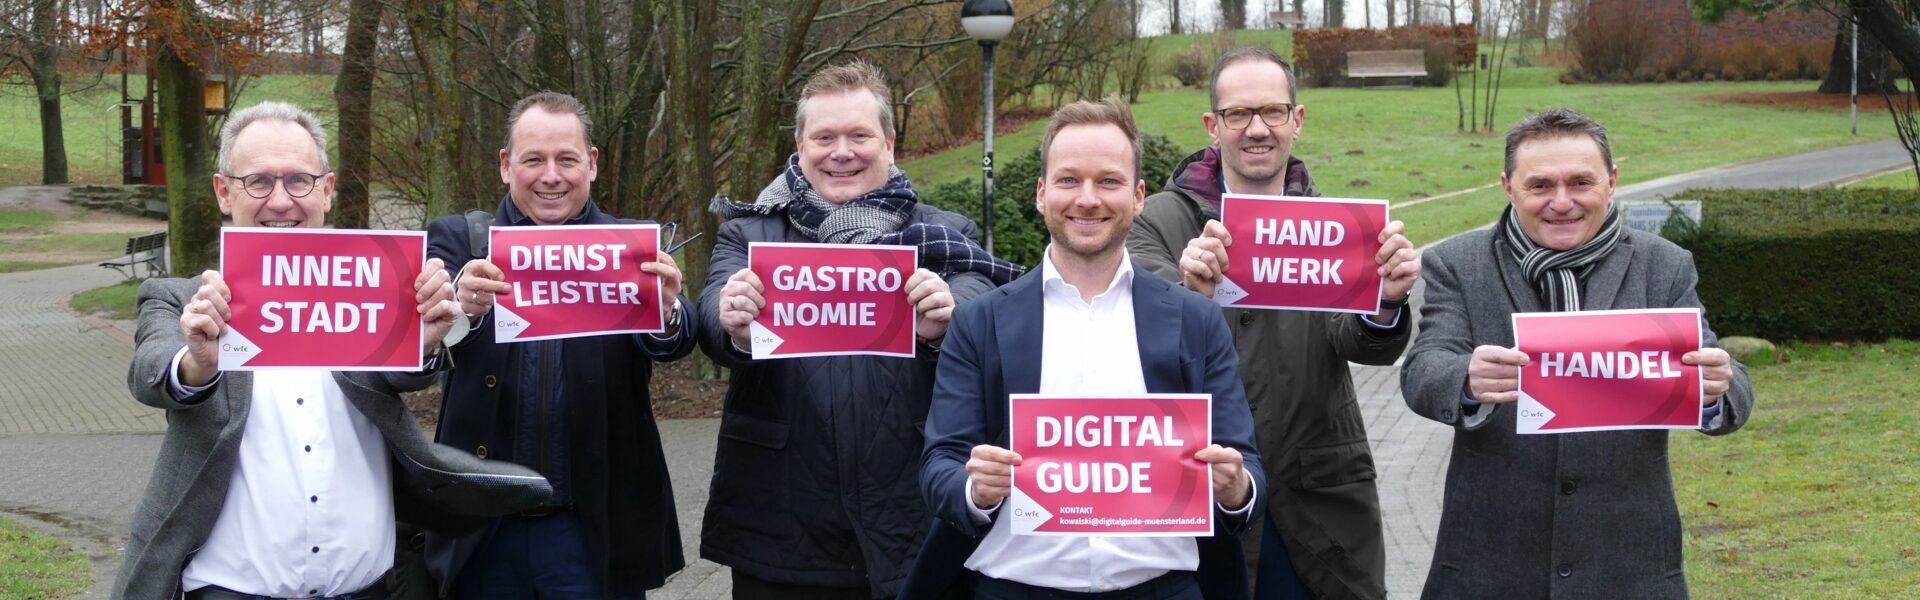 Digital Guide unterstützt Handelsbetriebe und Gastronomen bei der Digitalisierung